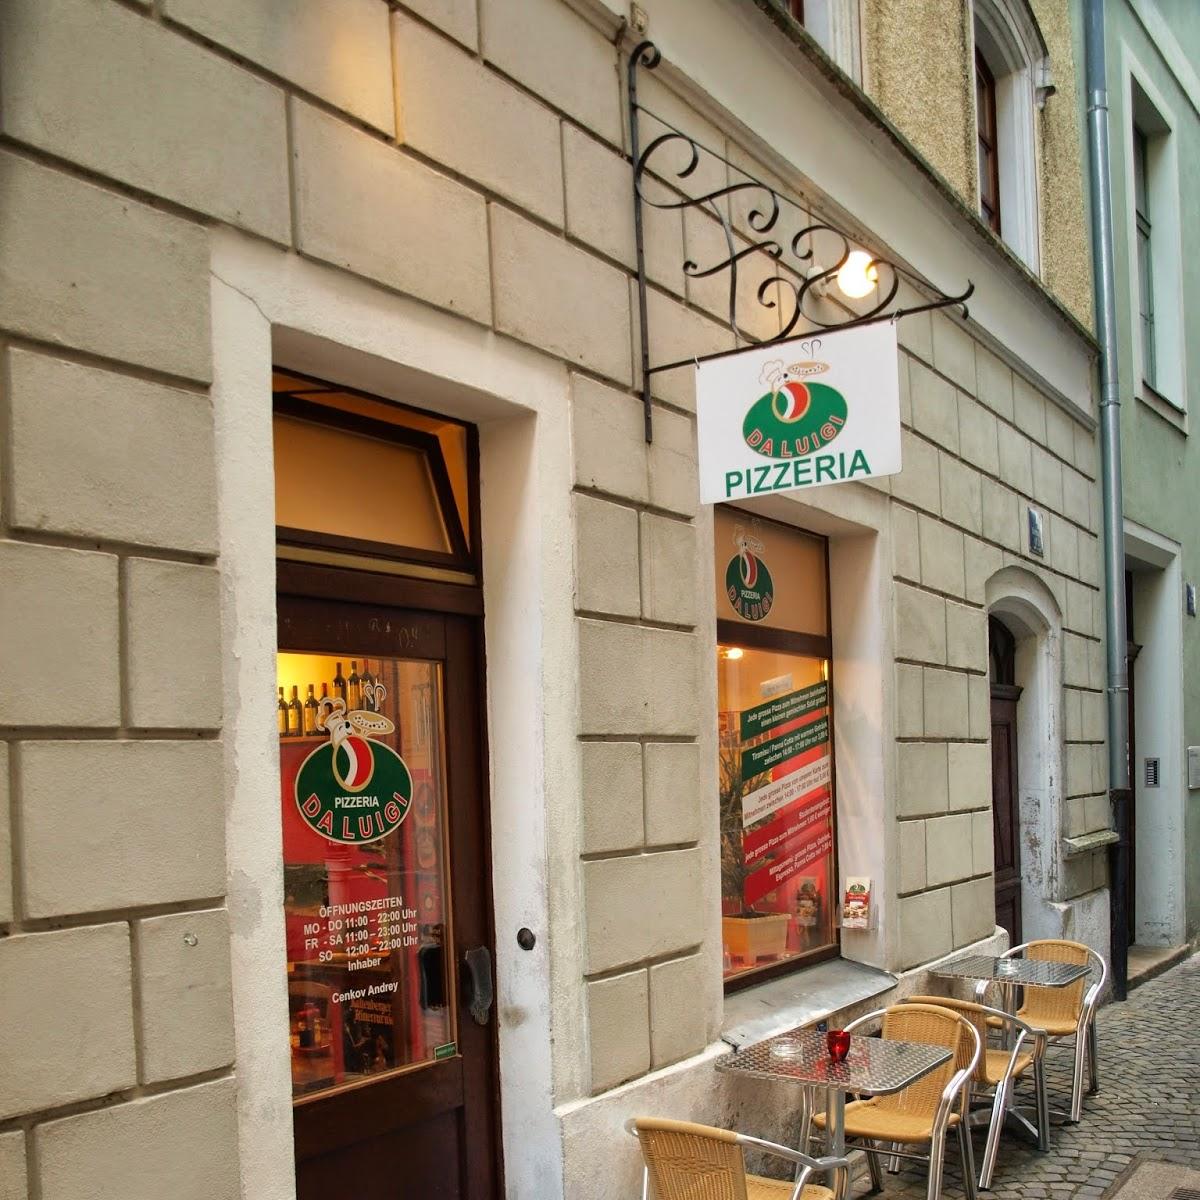 Restaurant "Pizzeria Da Luigi" in Regensburg